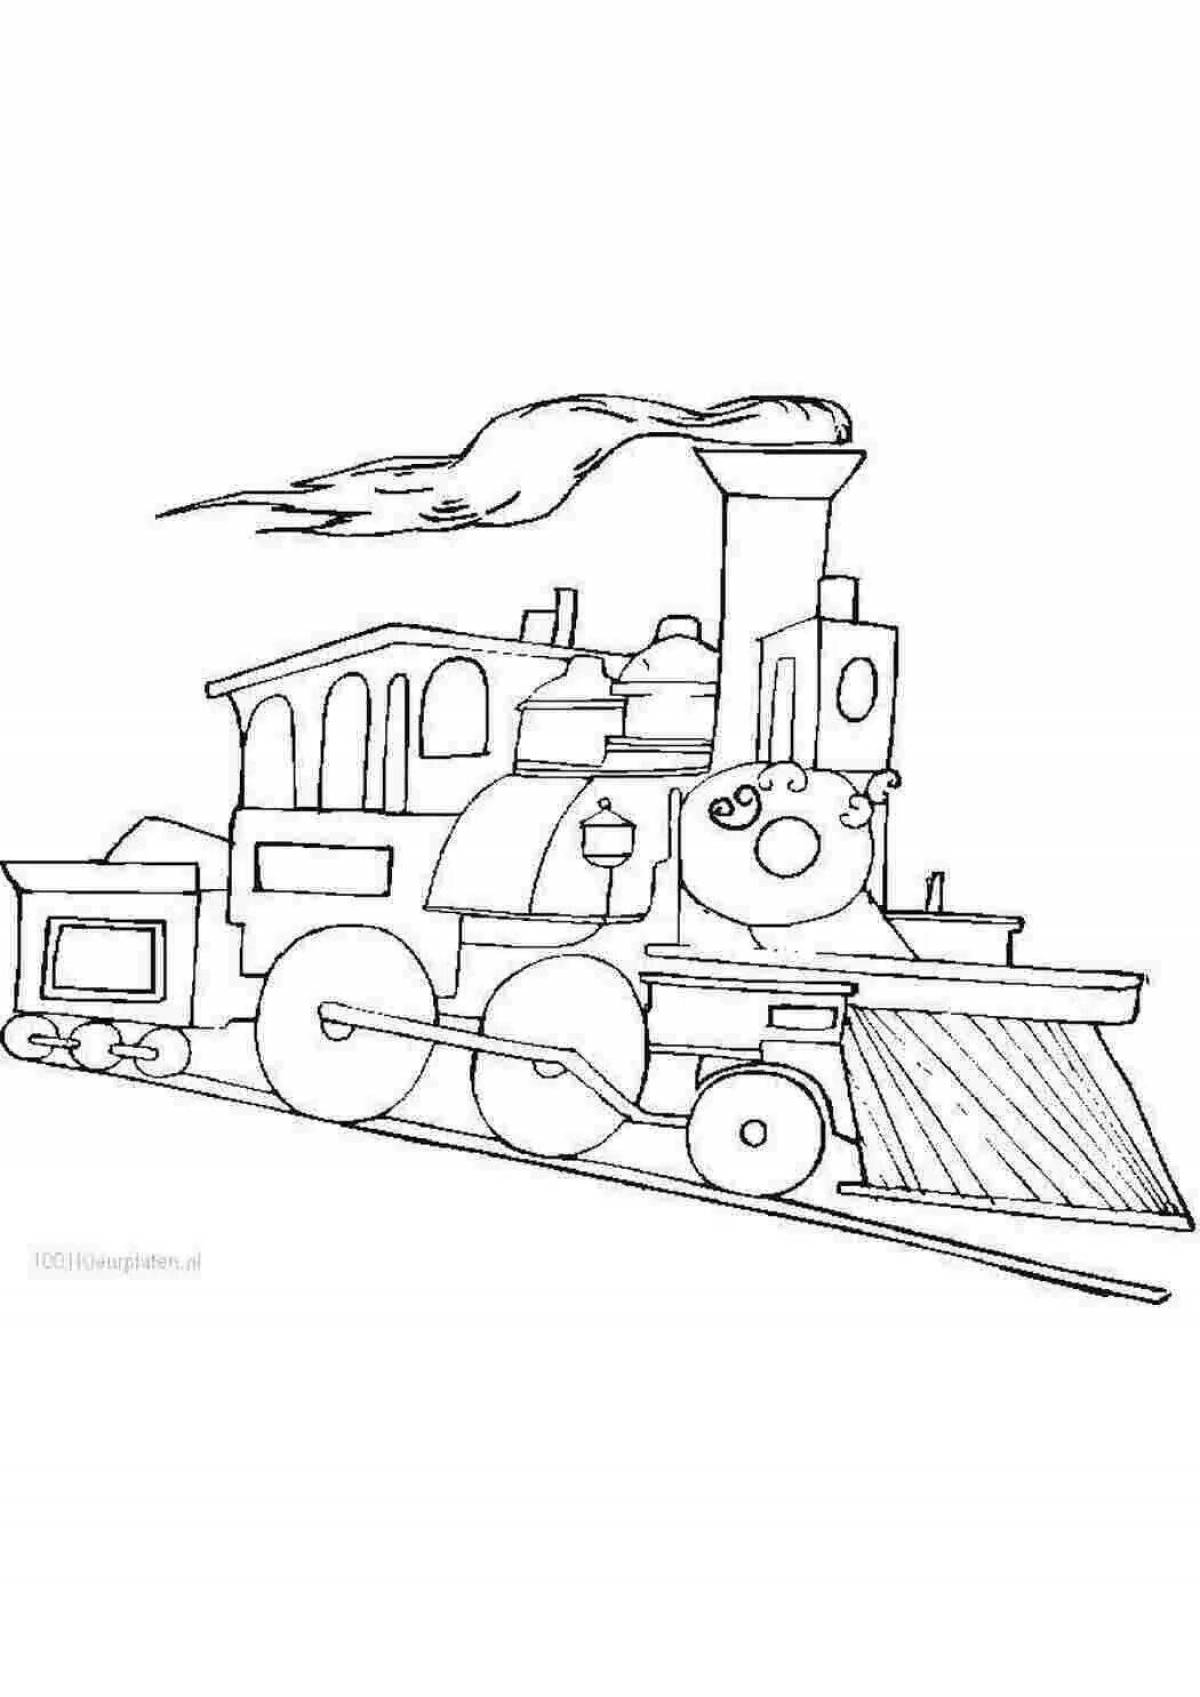 Colorful train sketch